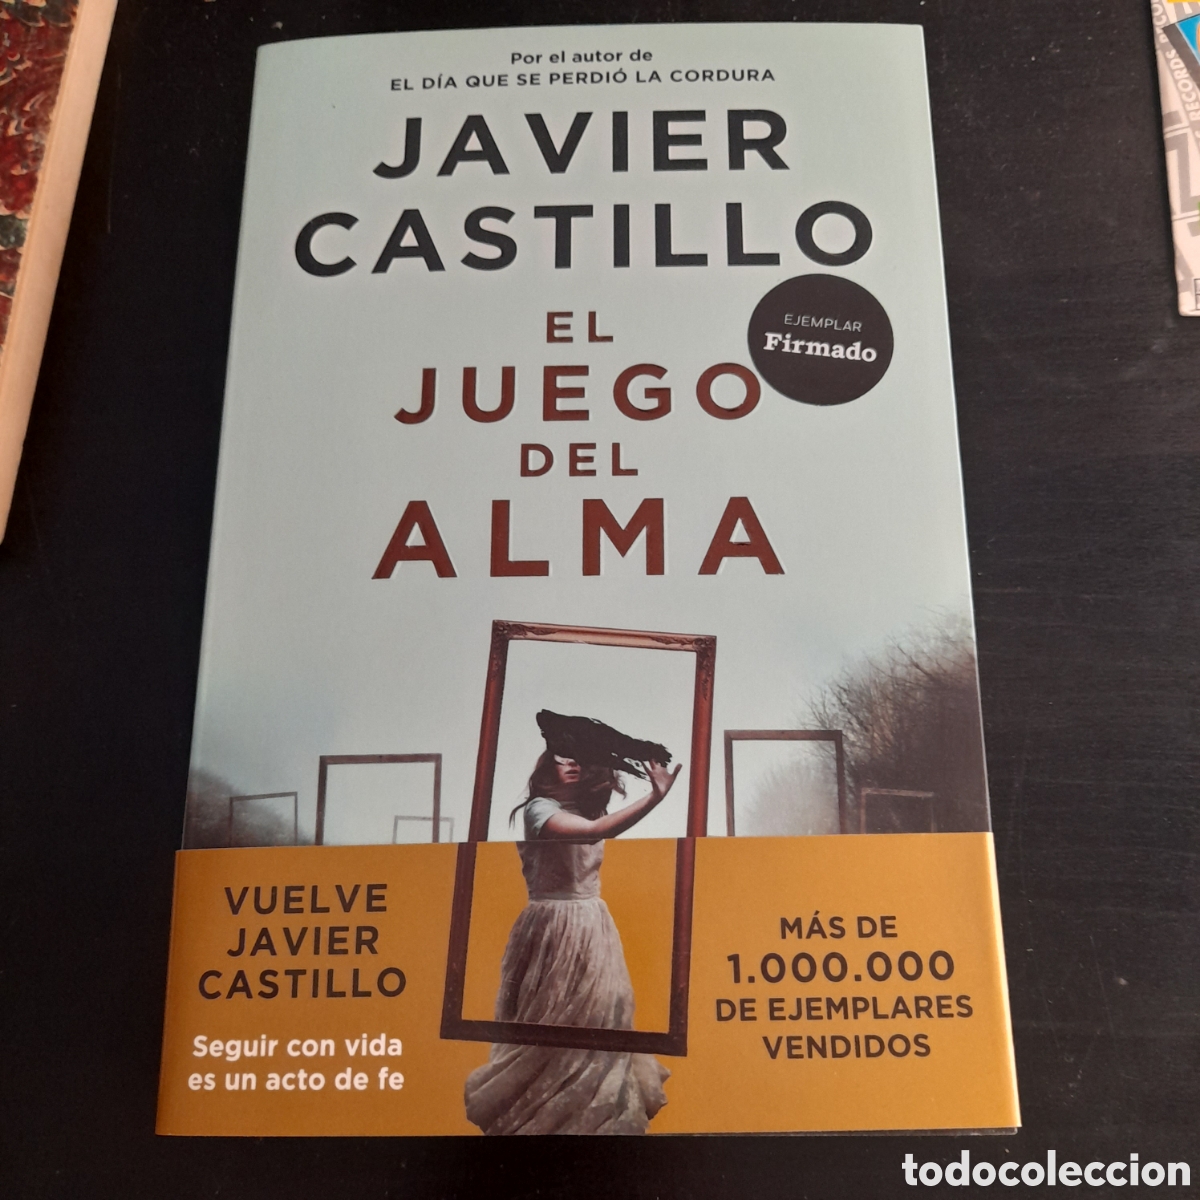 EL JUEGO DEL ALMA - JAVIER CASTILLO